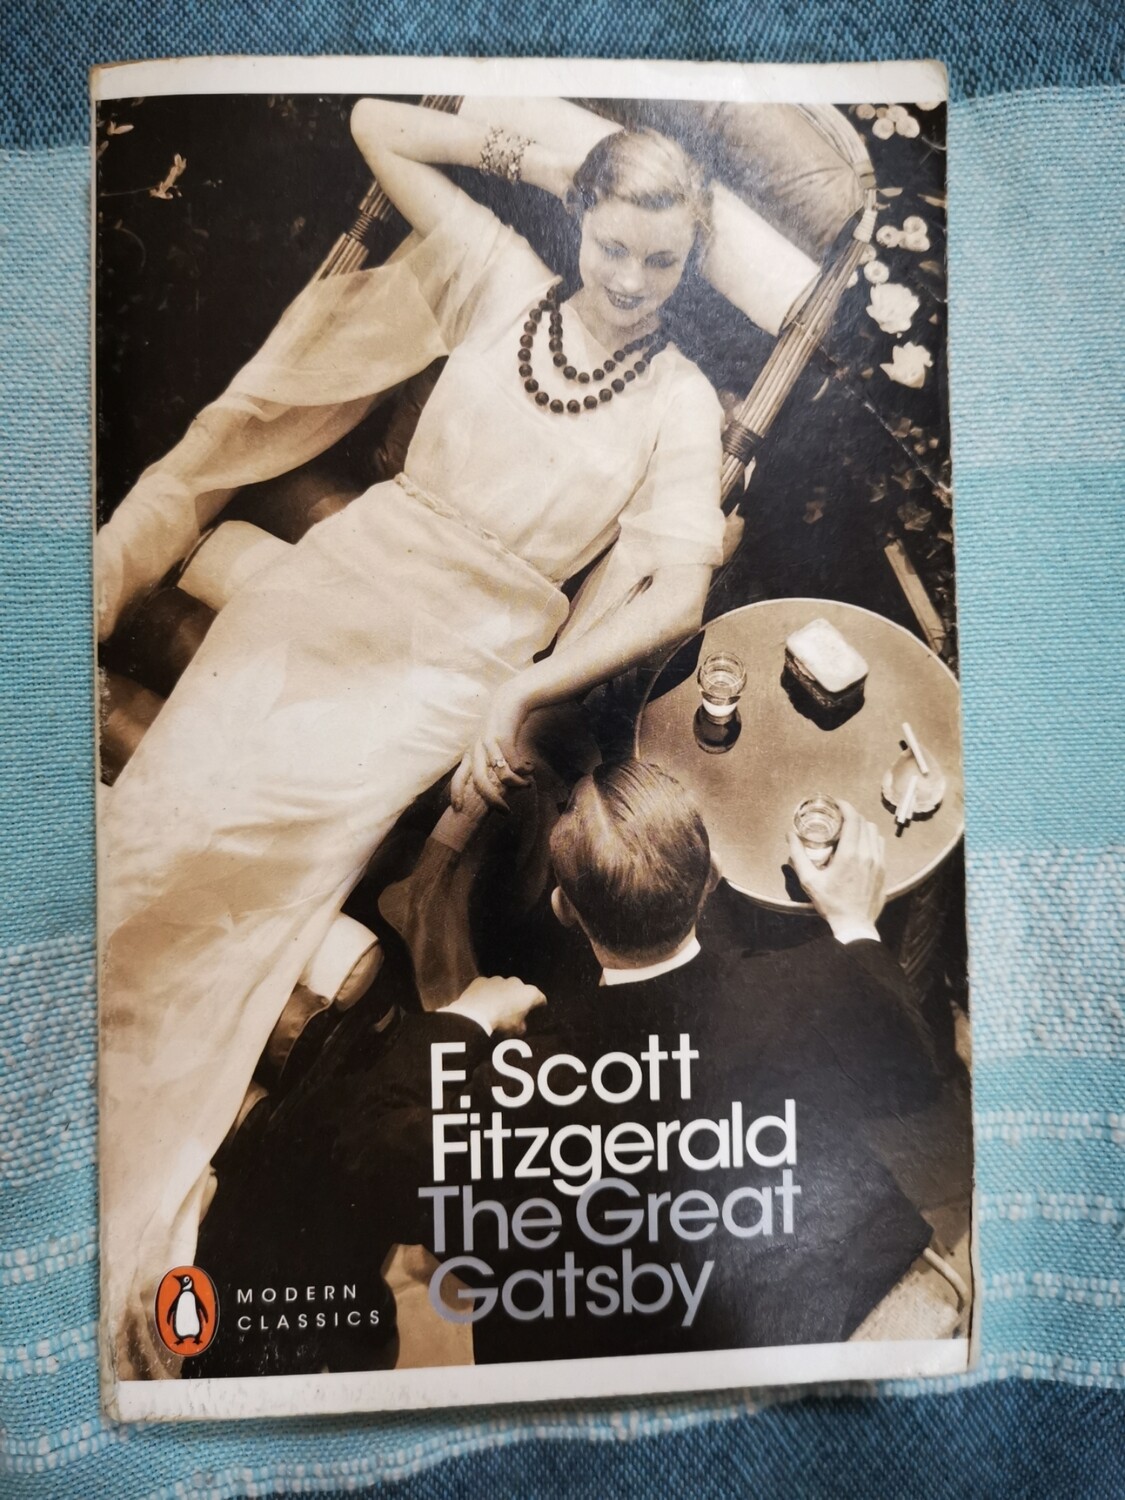 The great Gatsby, F. Scott Fitzgerald